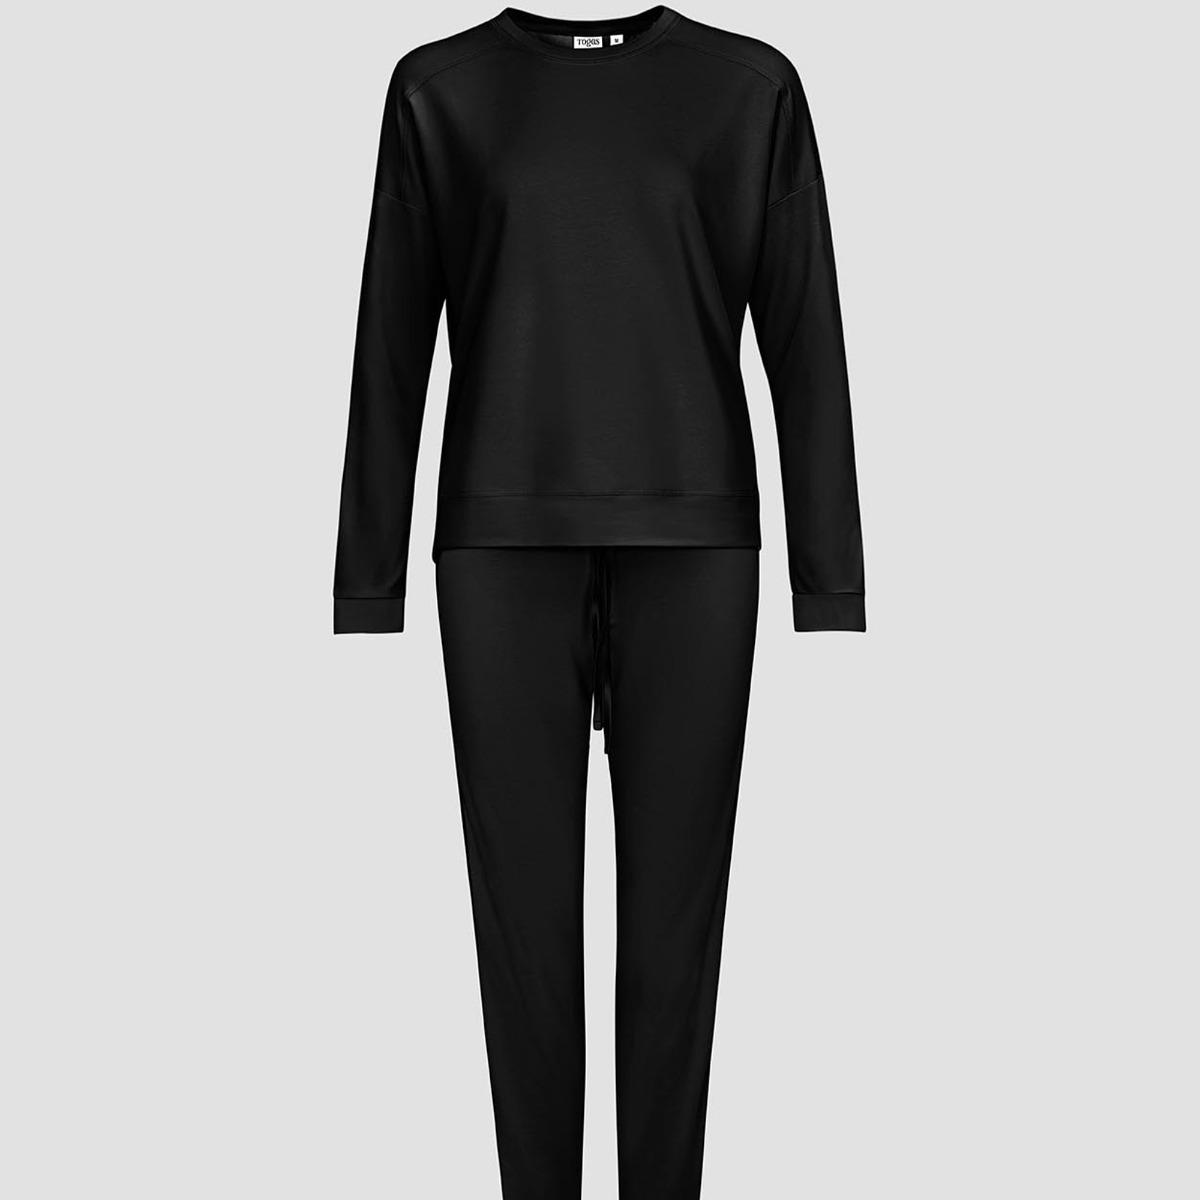 Женская пижама Togas Рене чёрная XL (50) пижама togas рене серая женская m 46